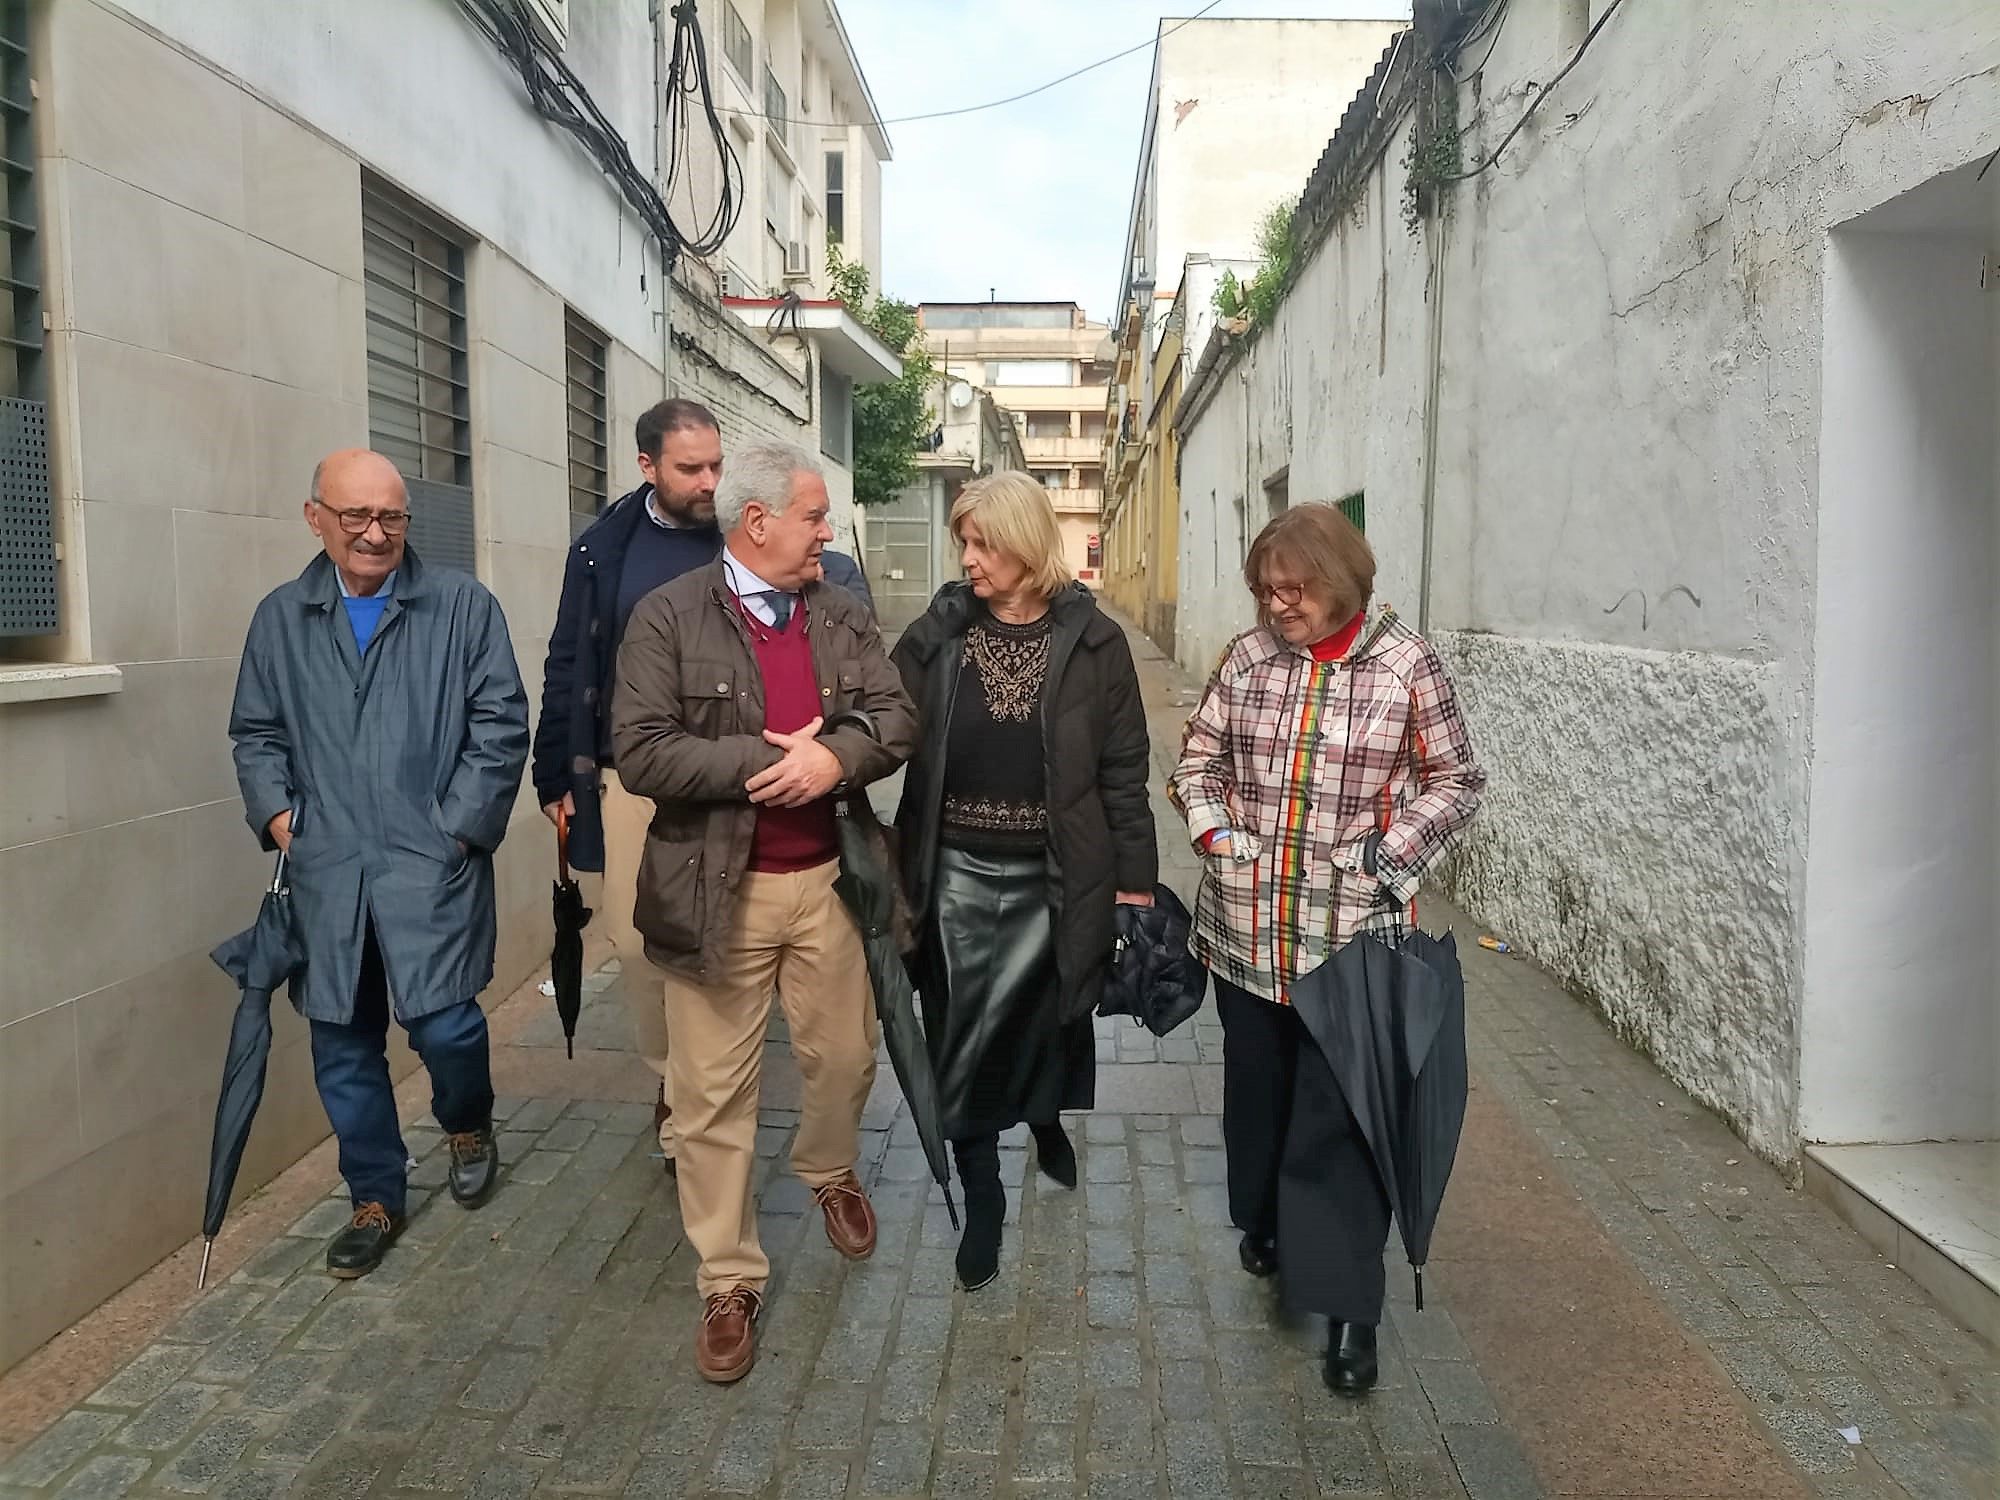 Un instante de la visita al barrio de Santiago por García Pelayo